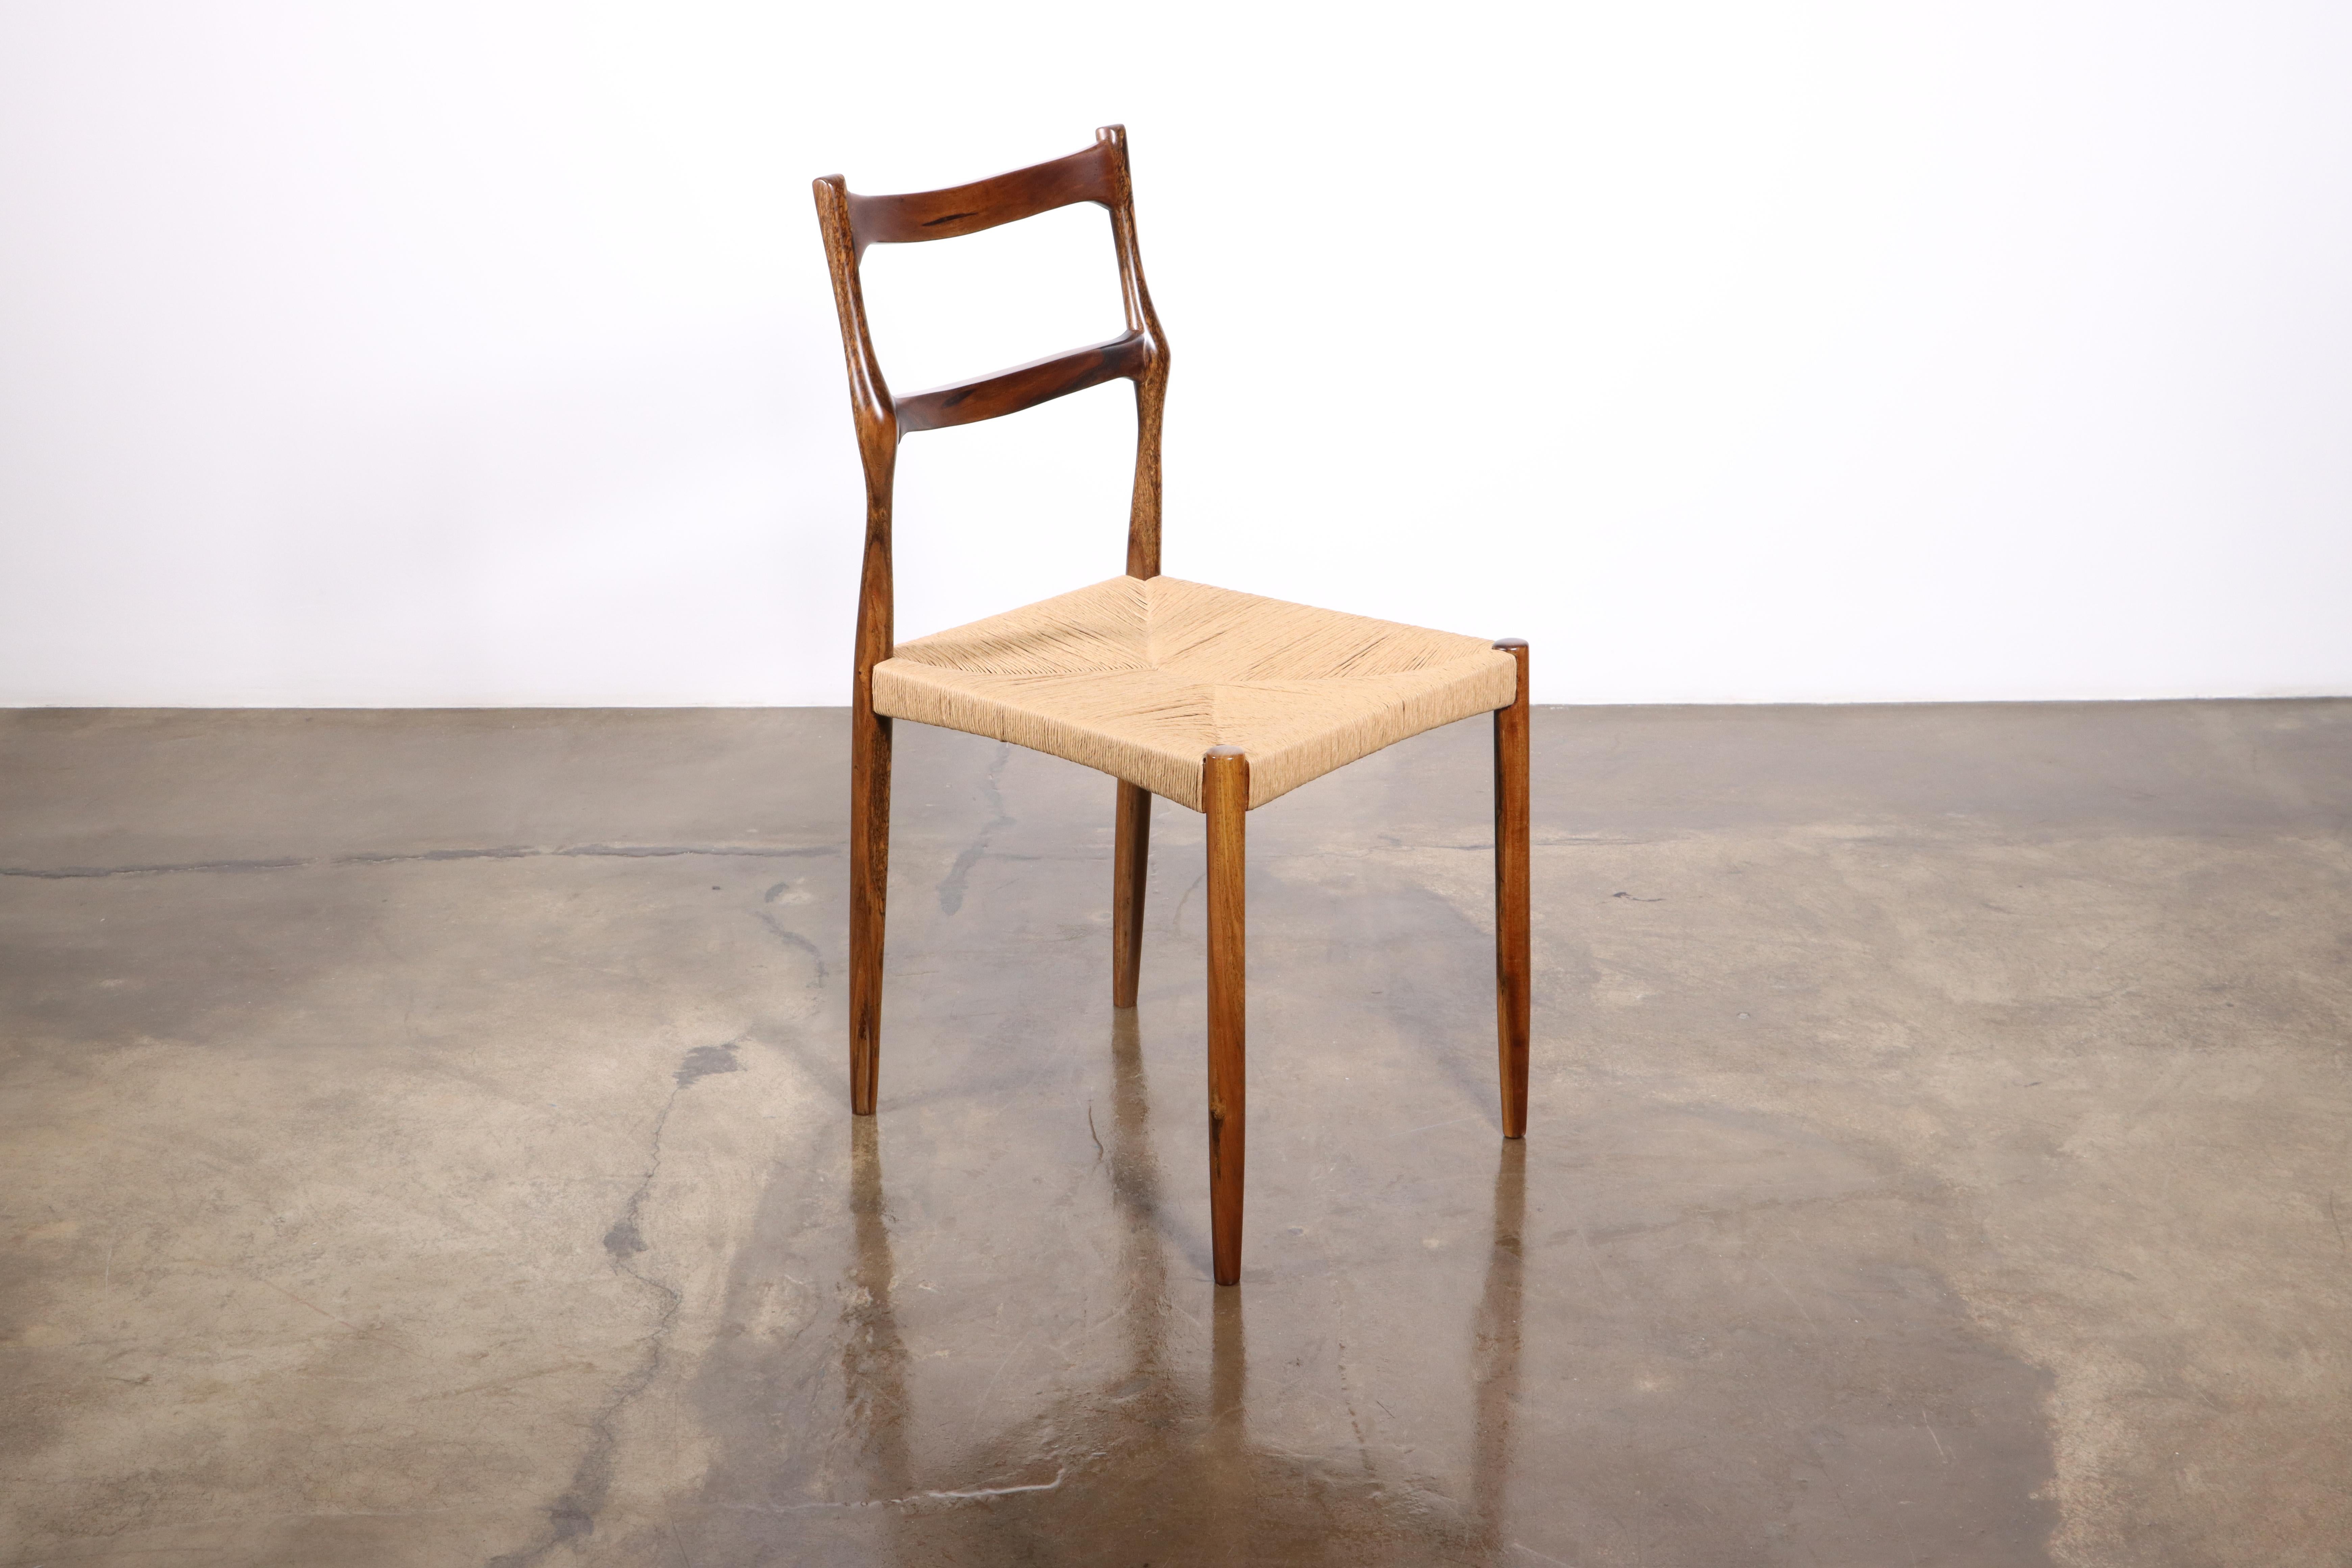 Liviana ist ein geschnitzter Lattenstuhl mit handgeflochtenem Sitz aus Binsen von Costantini Design. 

Dieser Stuhl wird auf Bestellung gefertigt und ist wie abgebildet in argentinischem Palisander oder in einem Material, einer Ausführung und einer